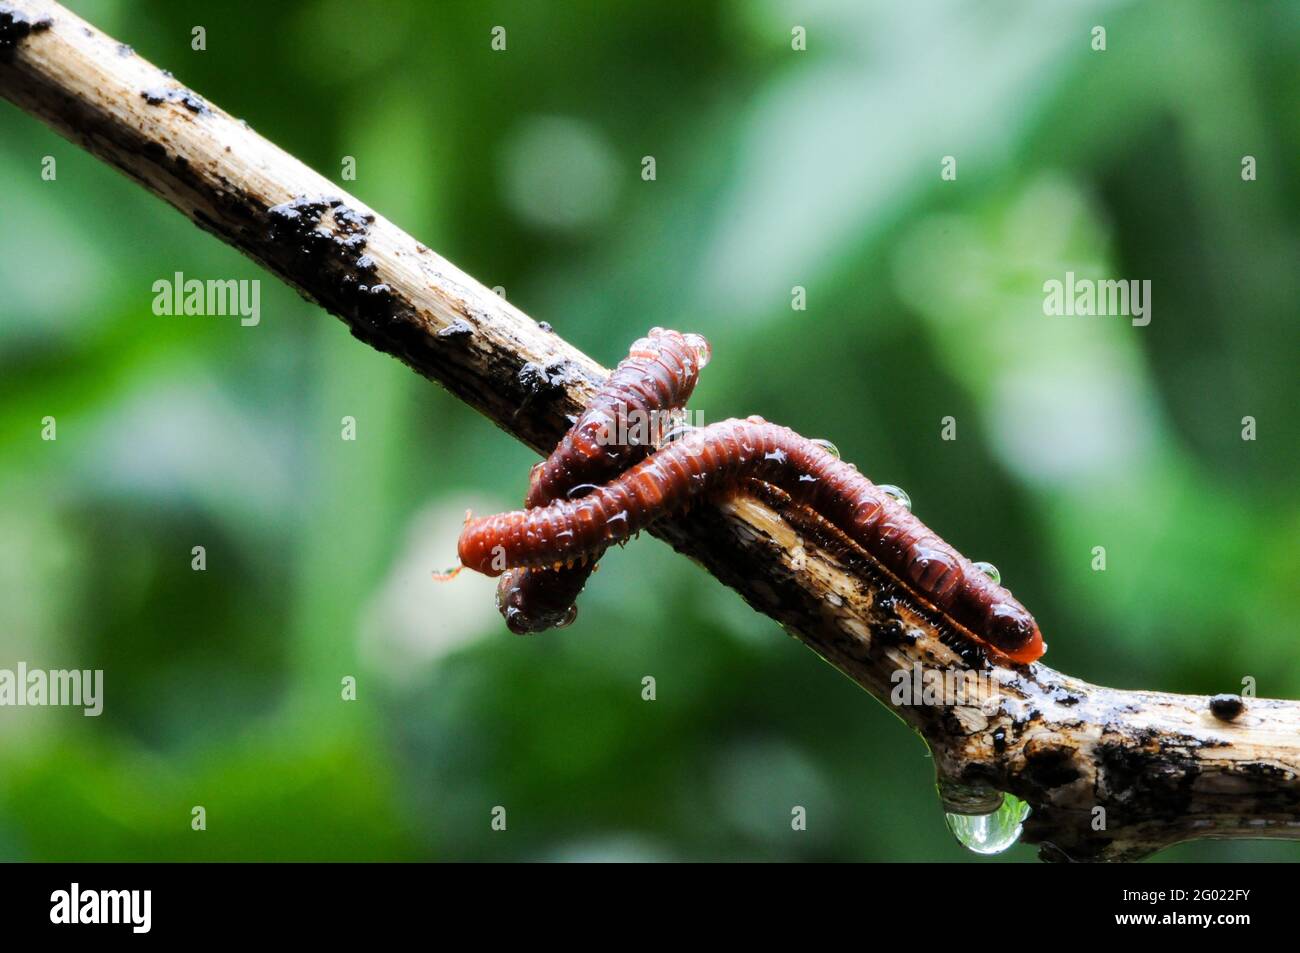 Millipède géant dans la branche et la feuille d'arbre, macro photographie d'insecte dans la forêt Banque D'Images